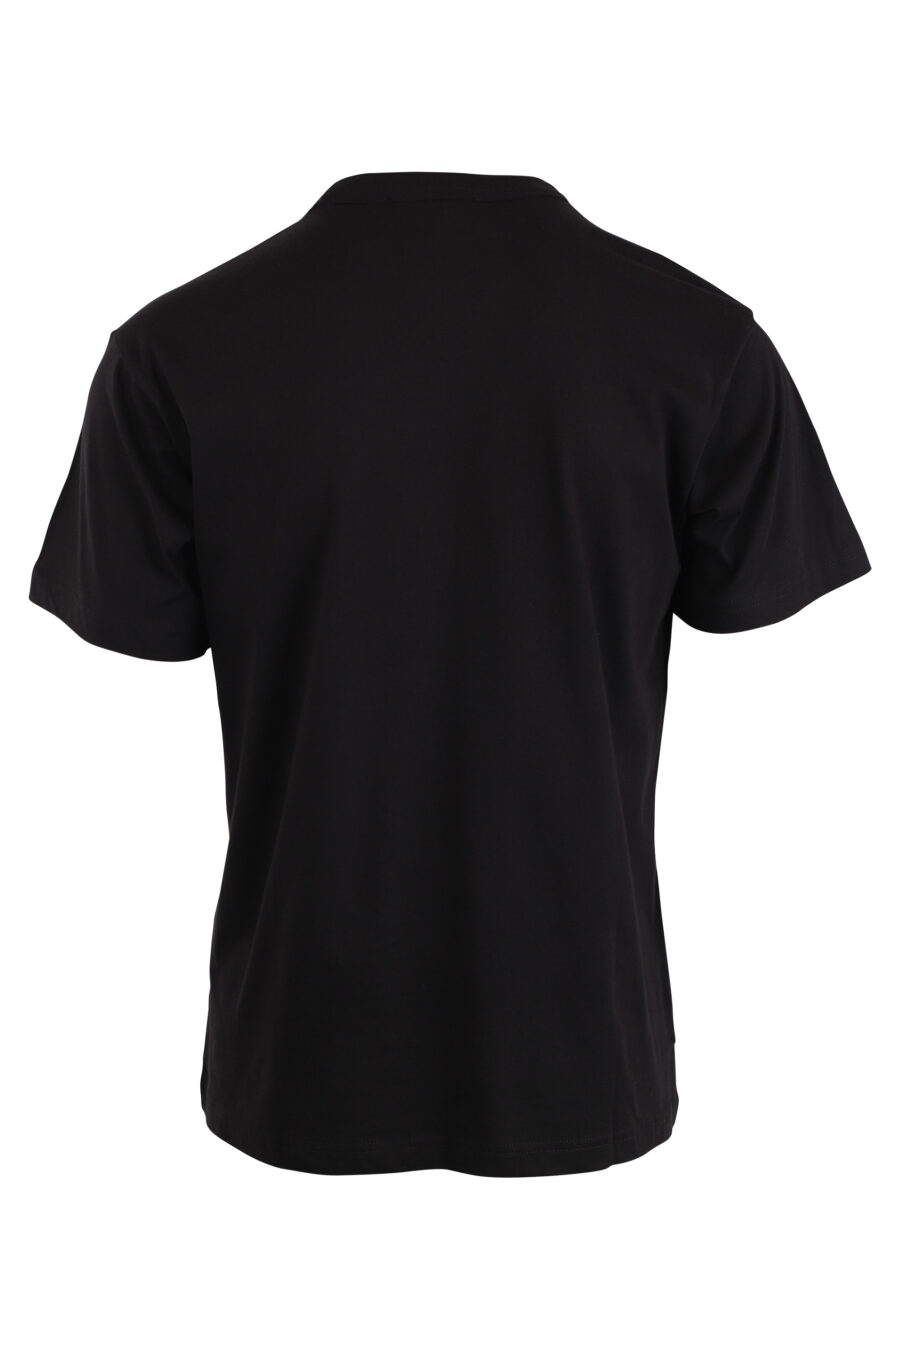 T-shirt preta com logótipo quadrado no centro - IMG 4224